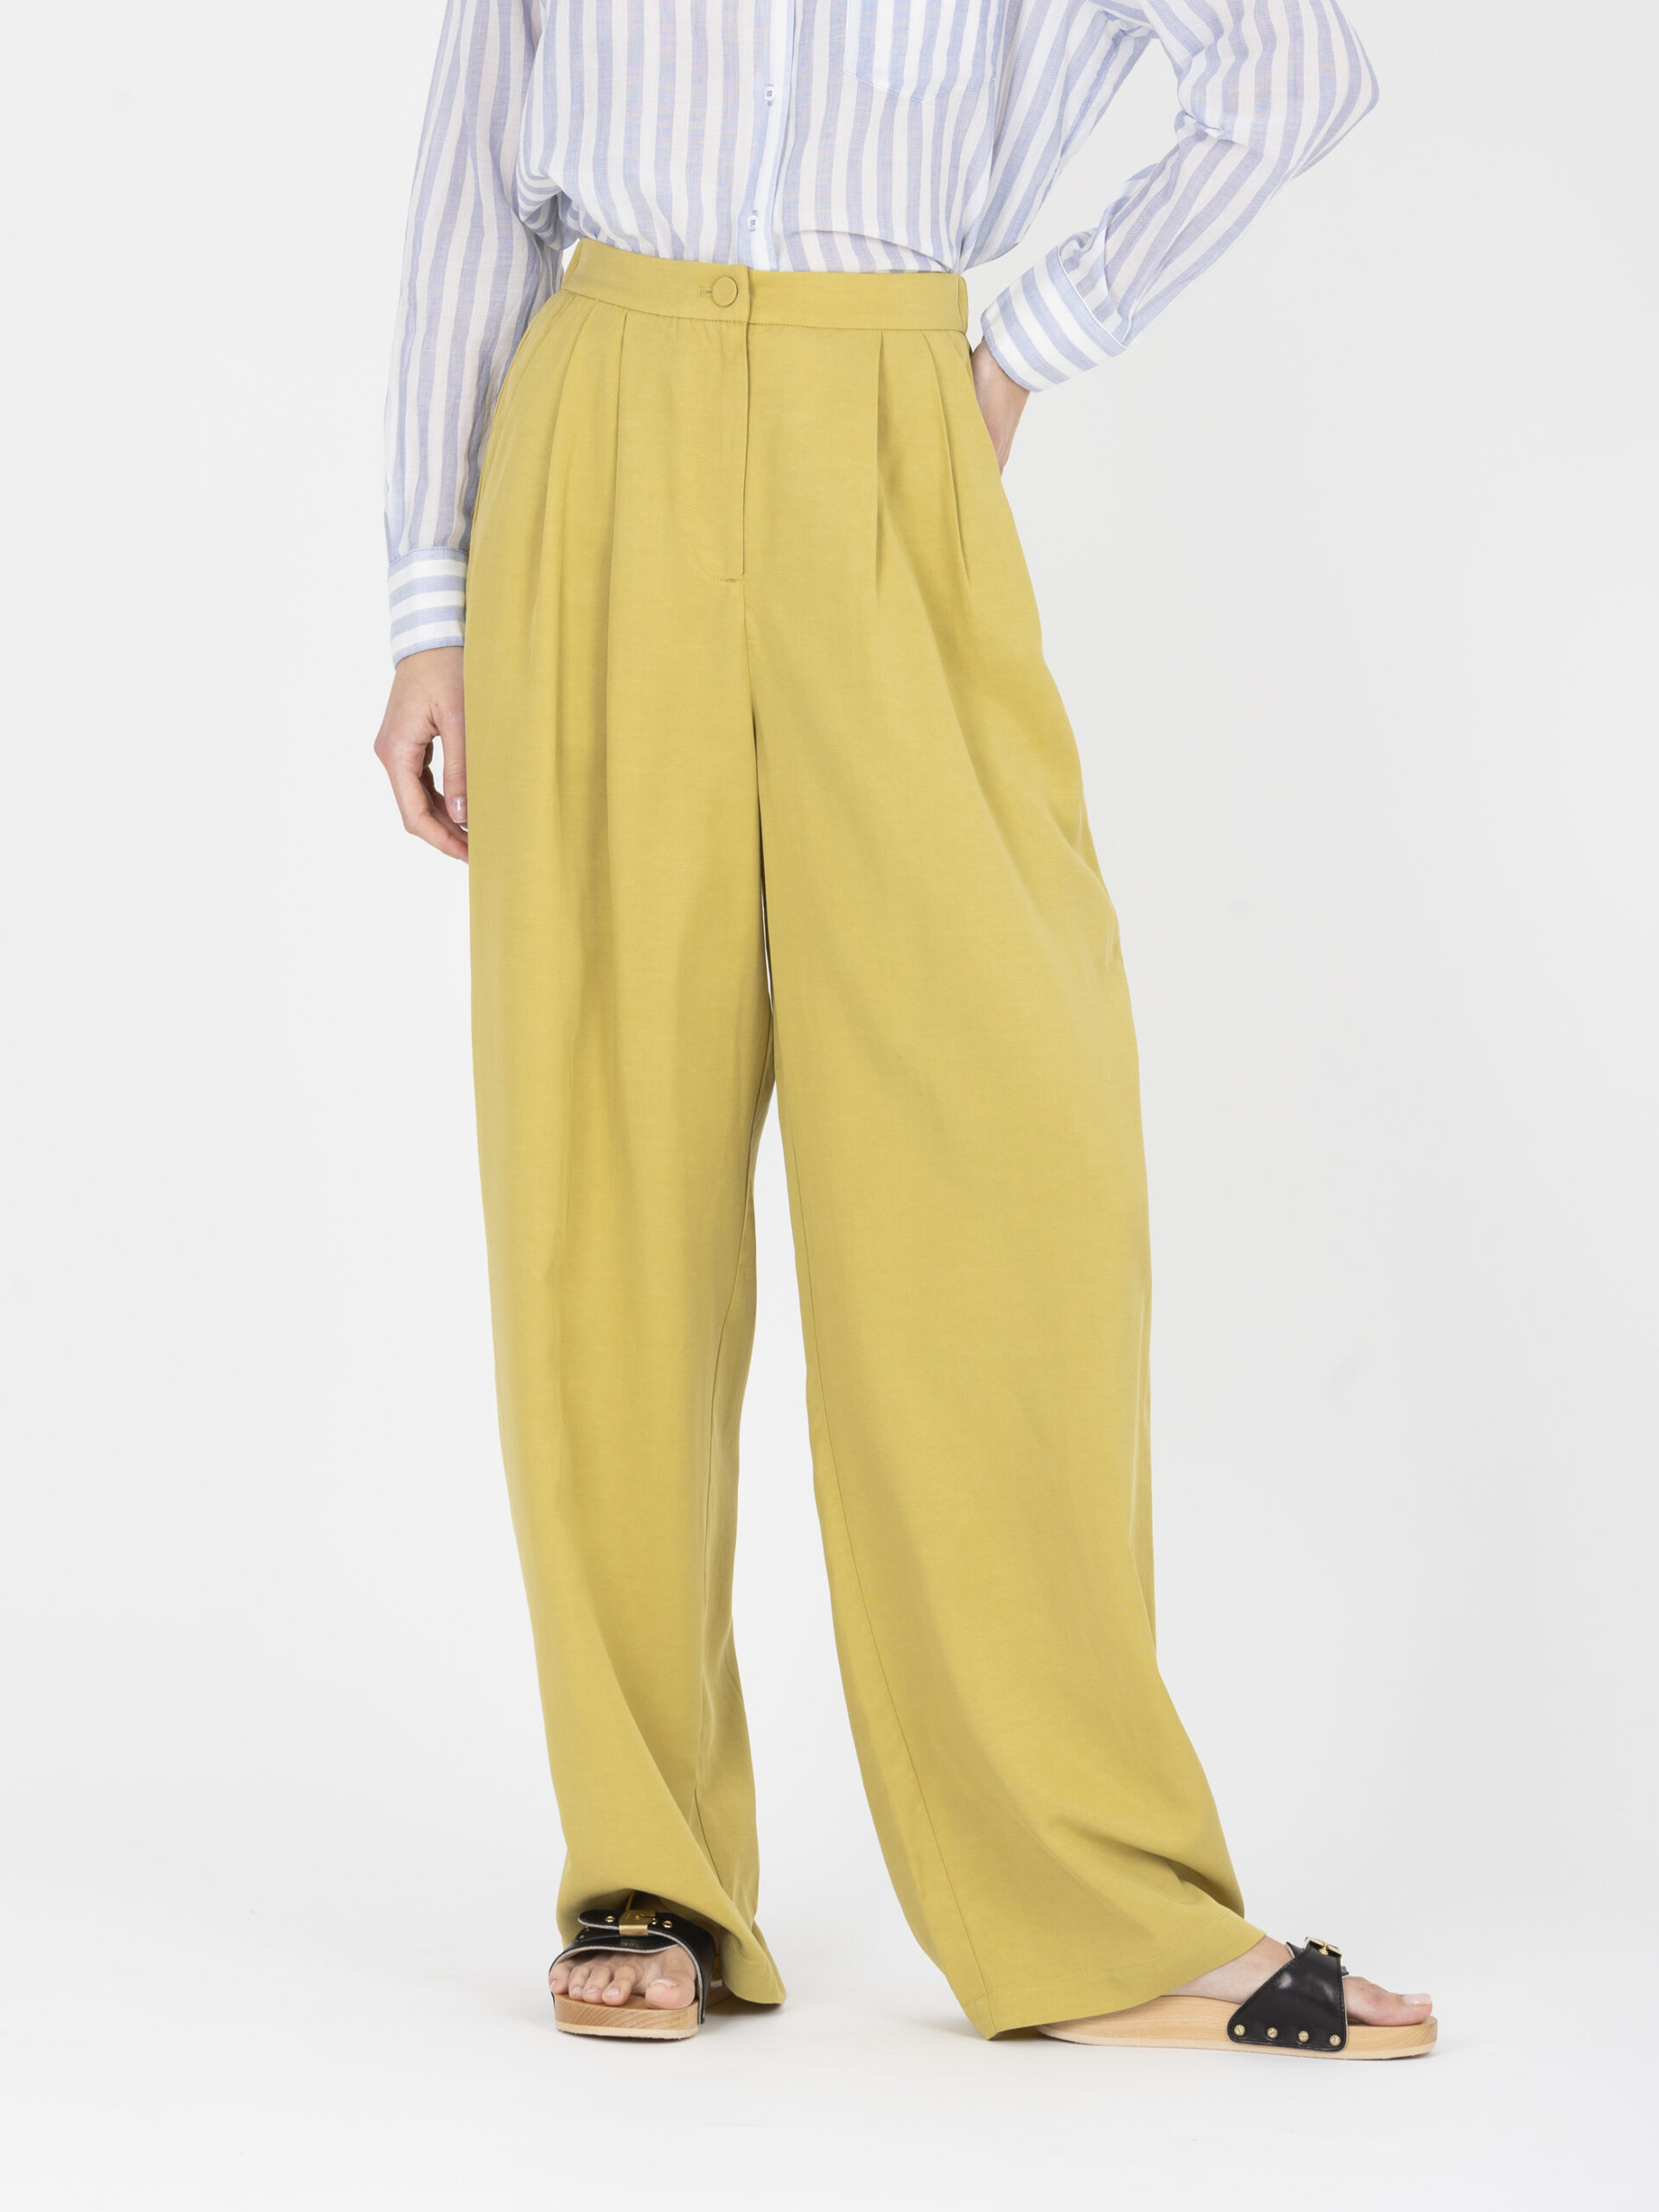 jicky-wide-pants-high-waisted-lime-olive-pleated-suncoo-matchboxathens